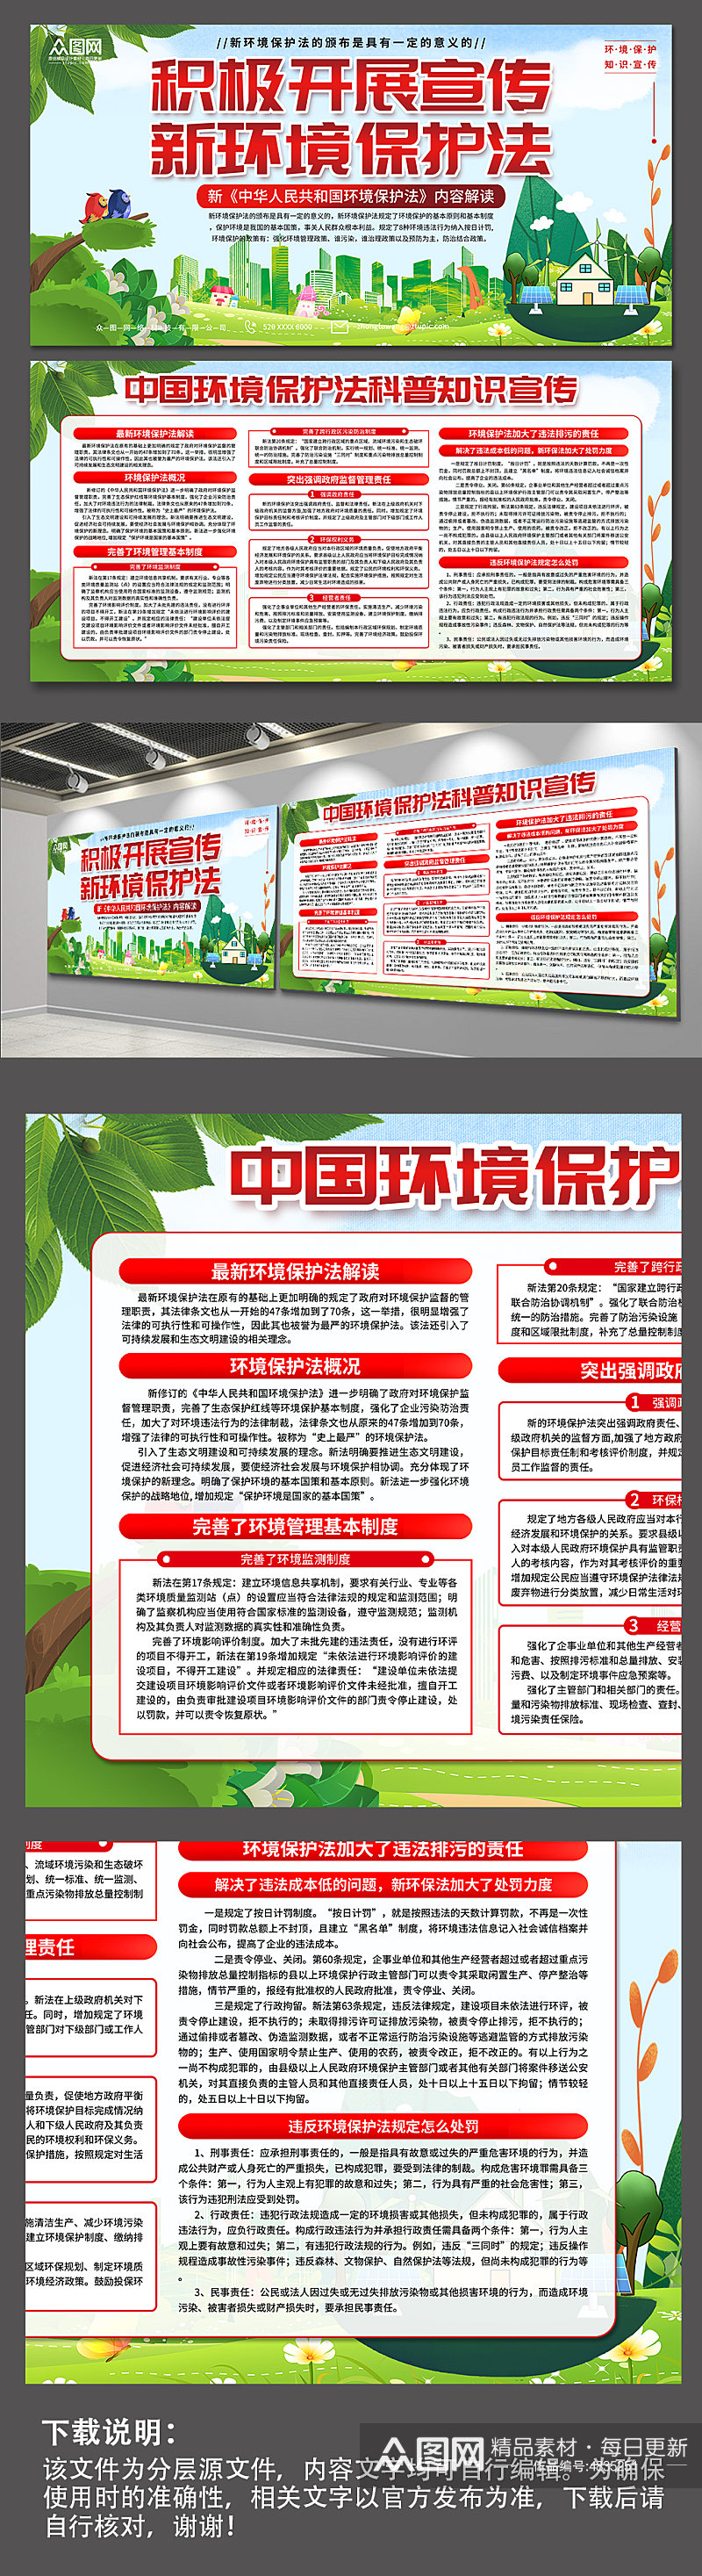 清新中国环境保护法知识宣传展板素材